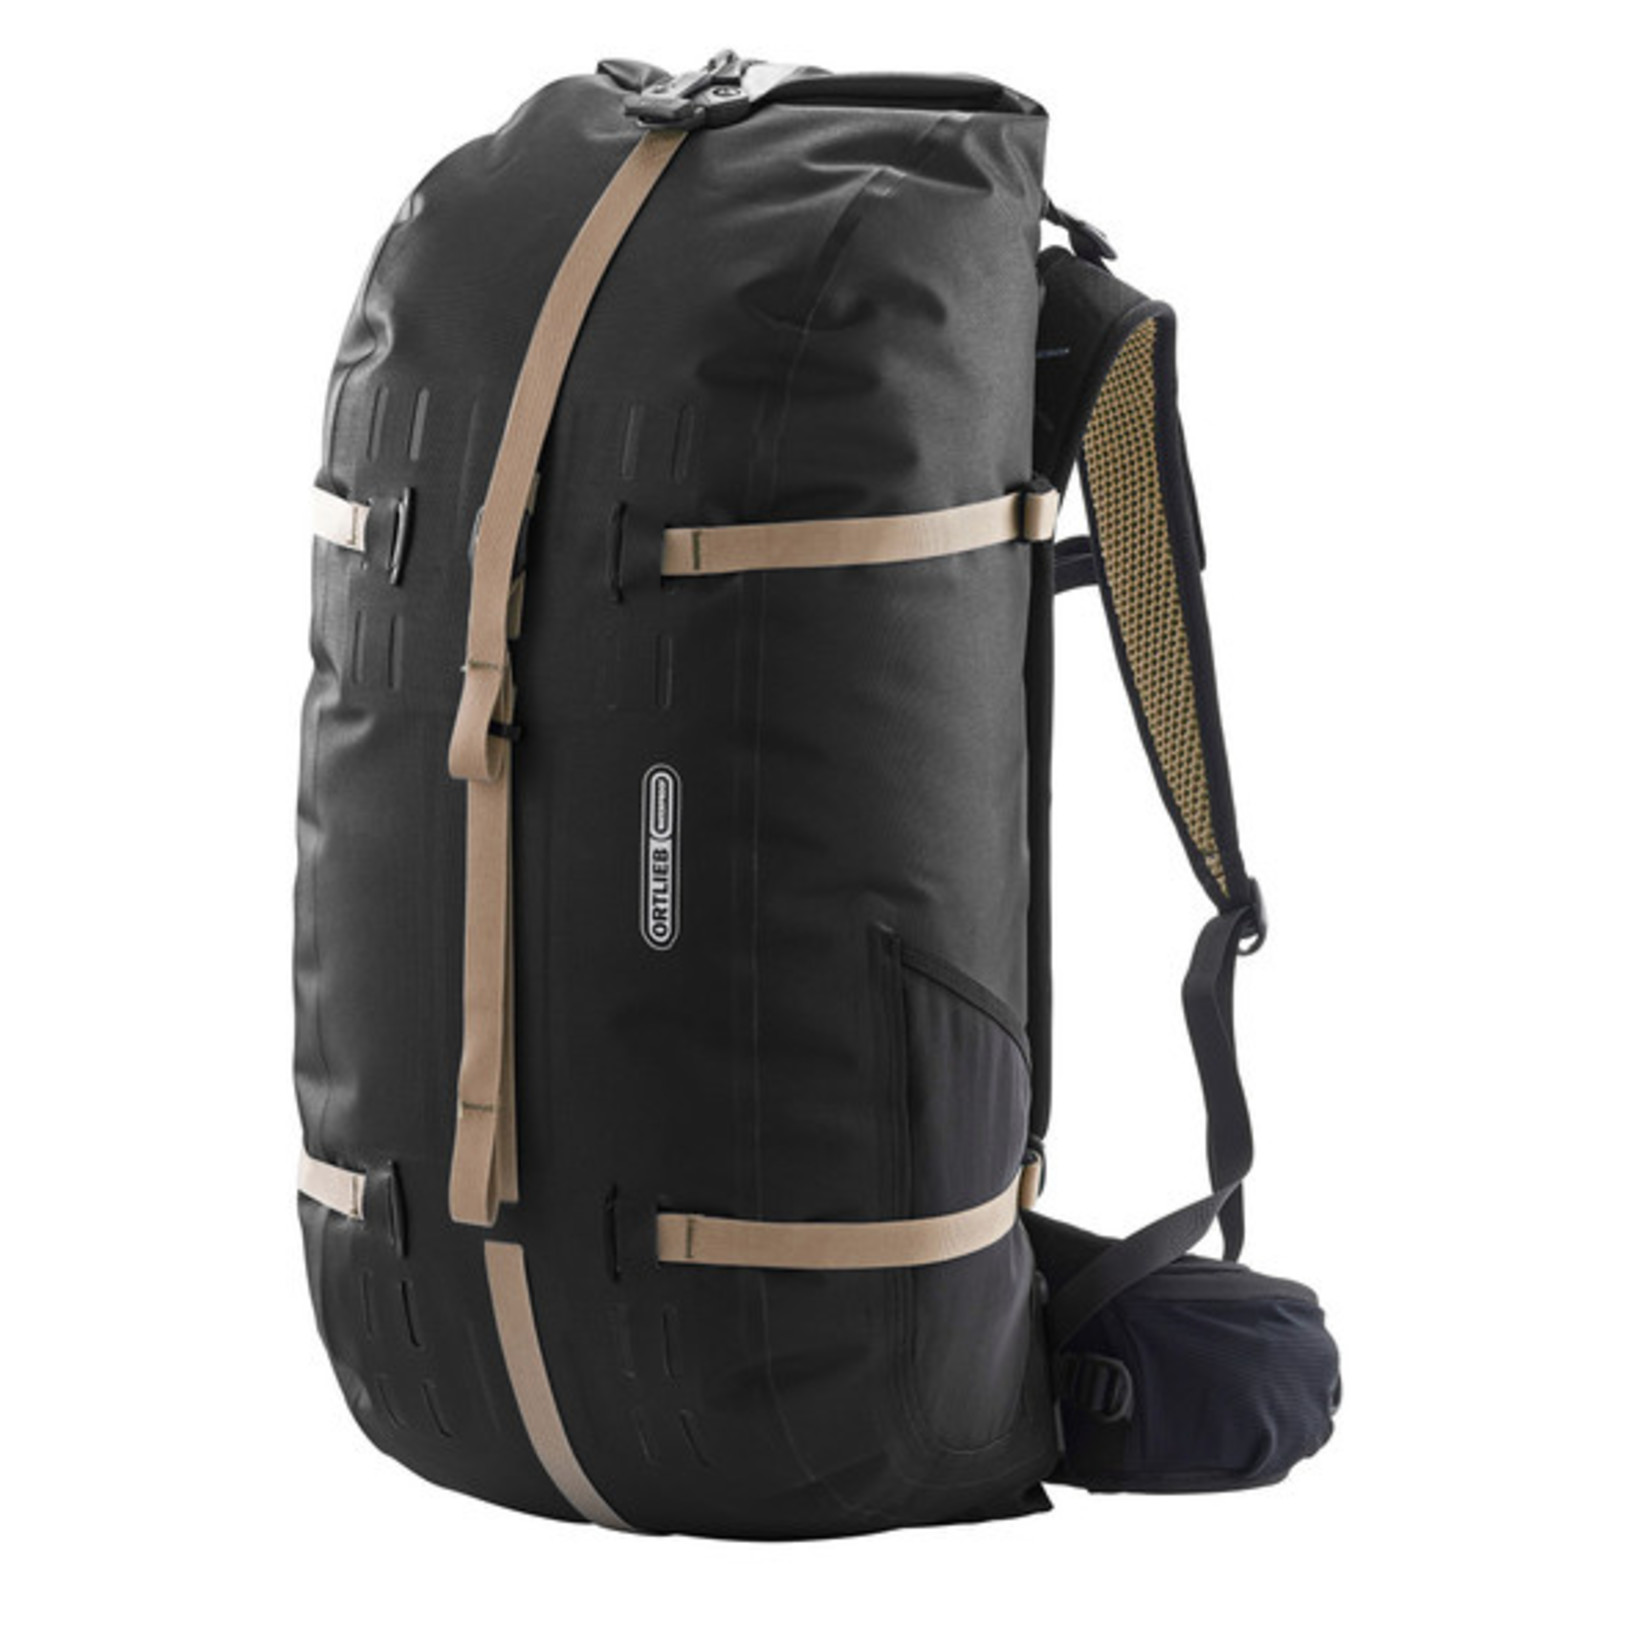 Ortlieb New Ortlieb Atrack Waterproof Backpack Travel Bag R7104 - 45L - Black